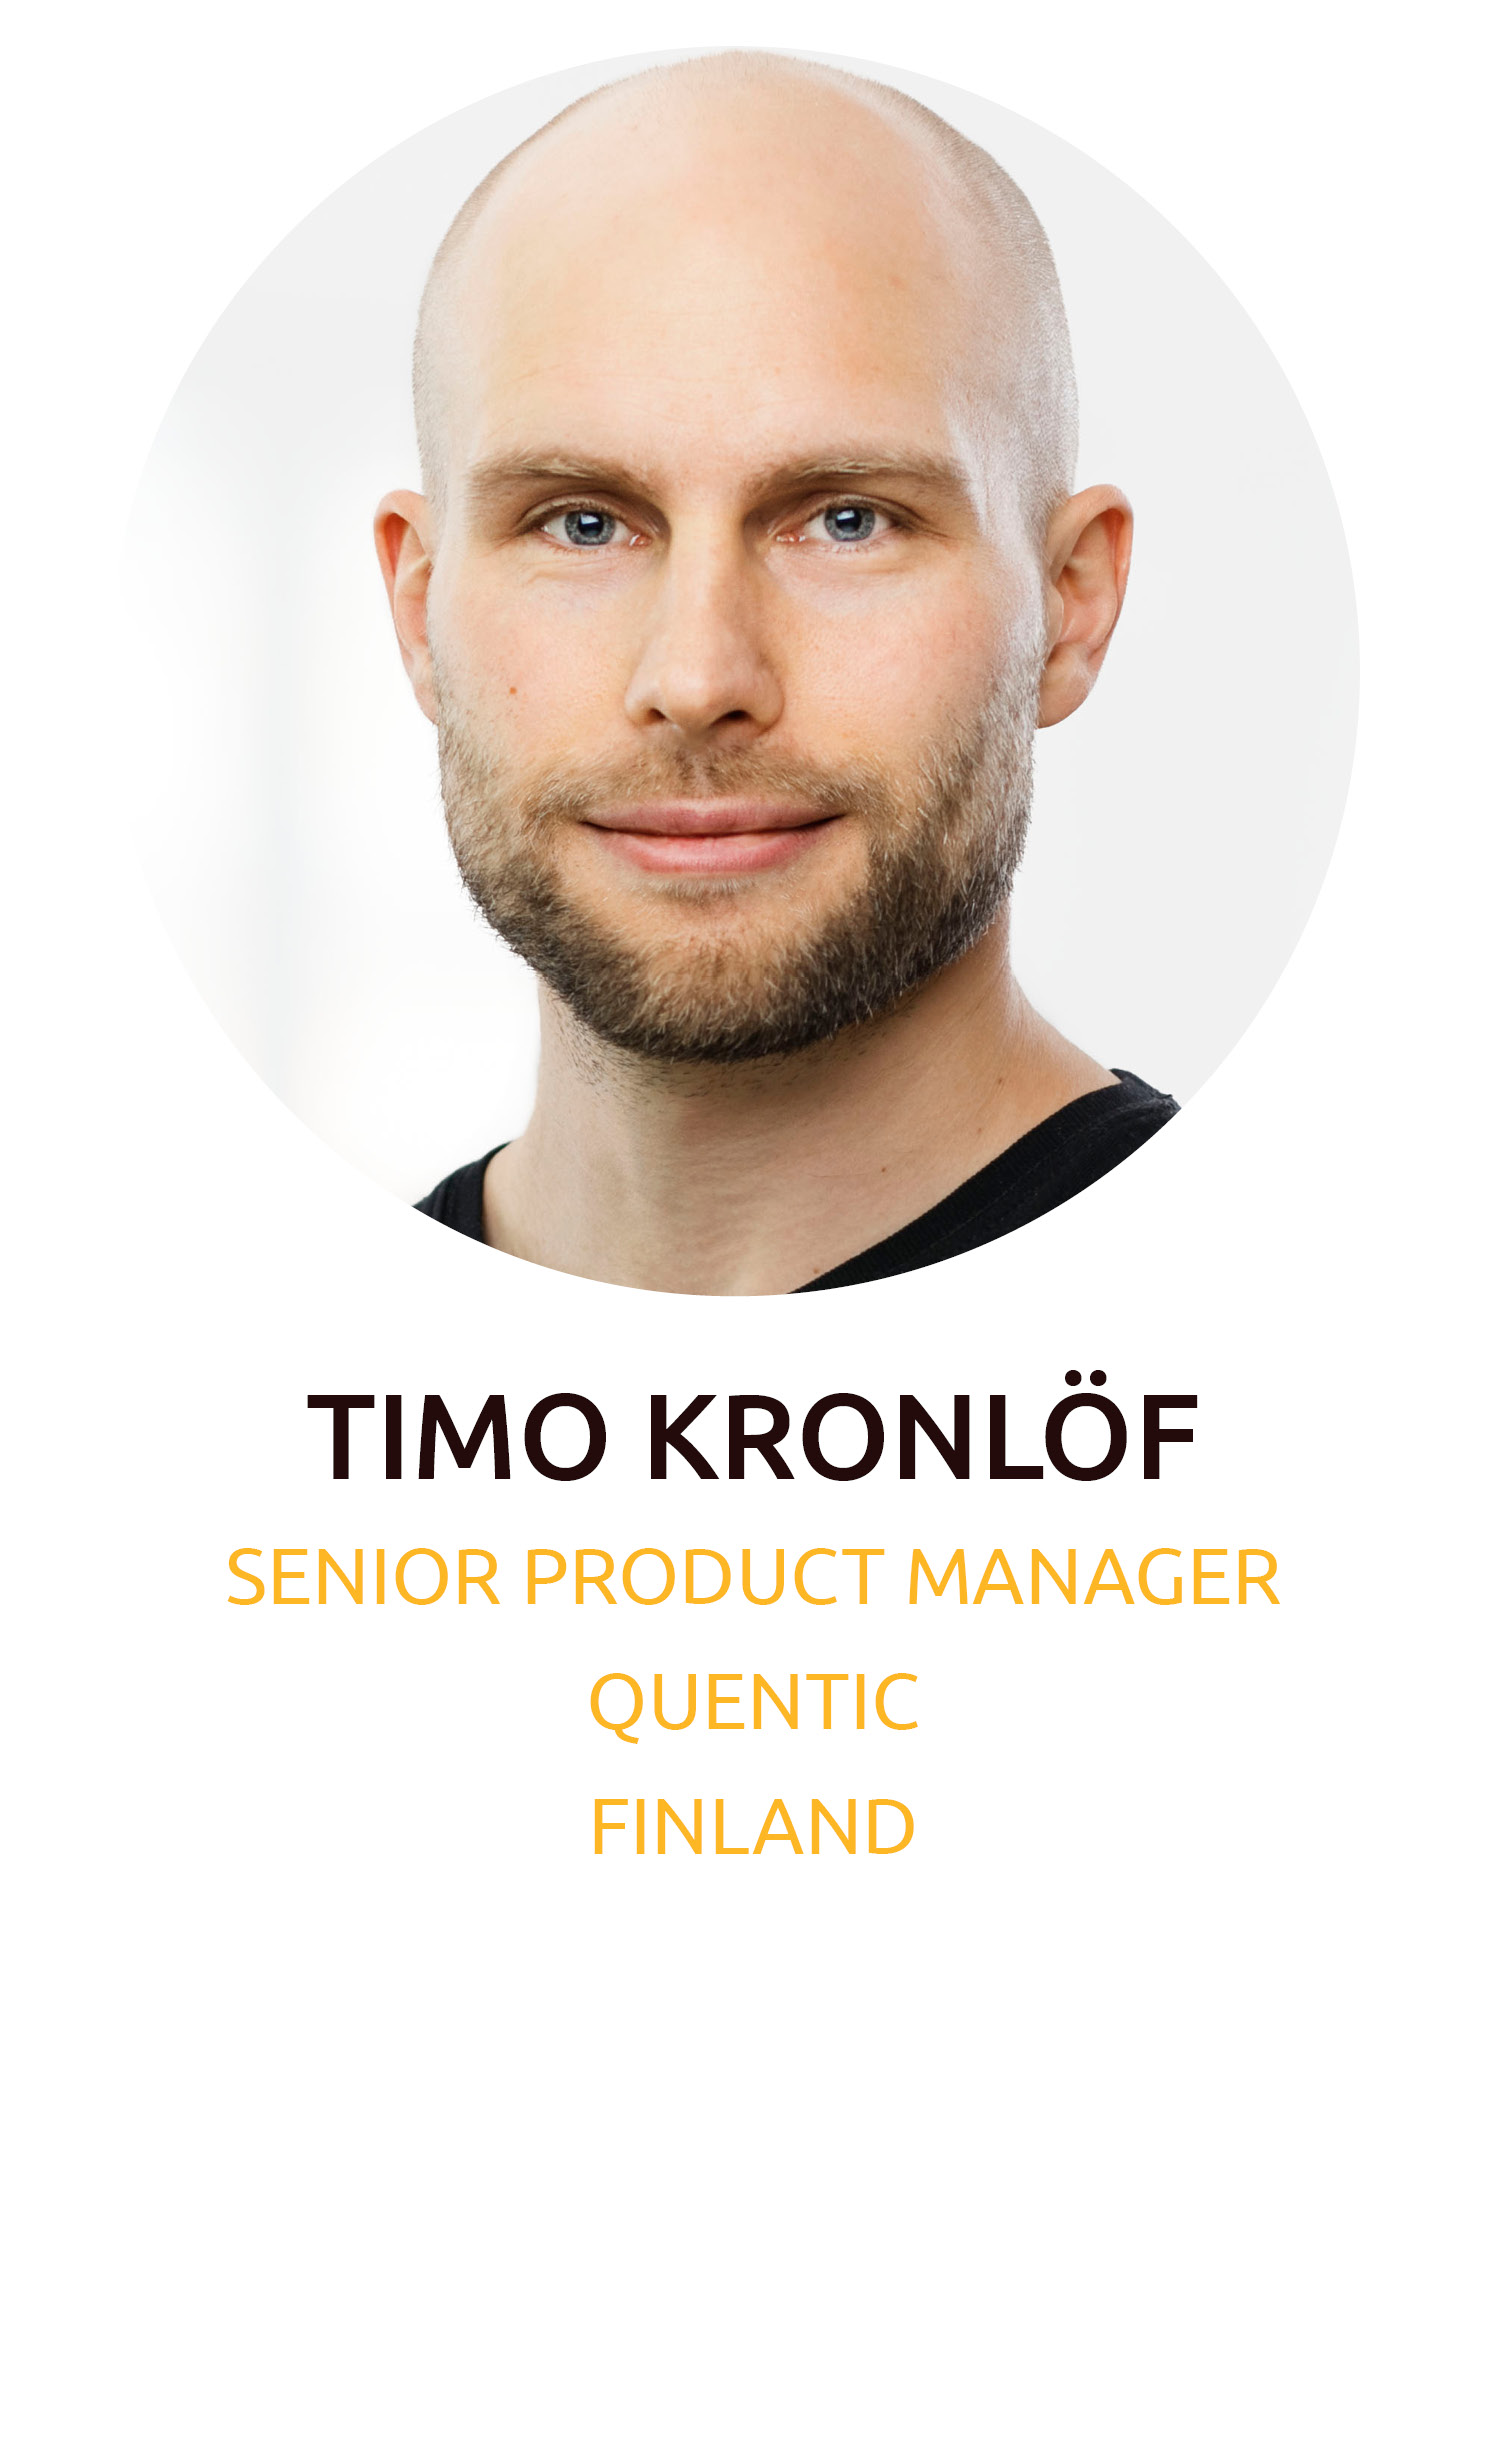 Timo Kronlof